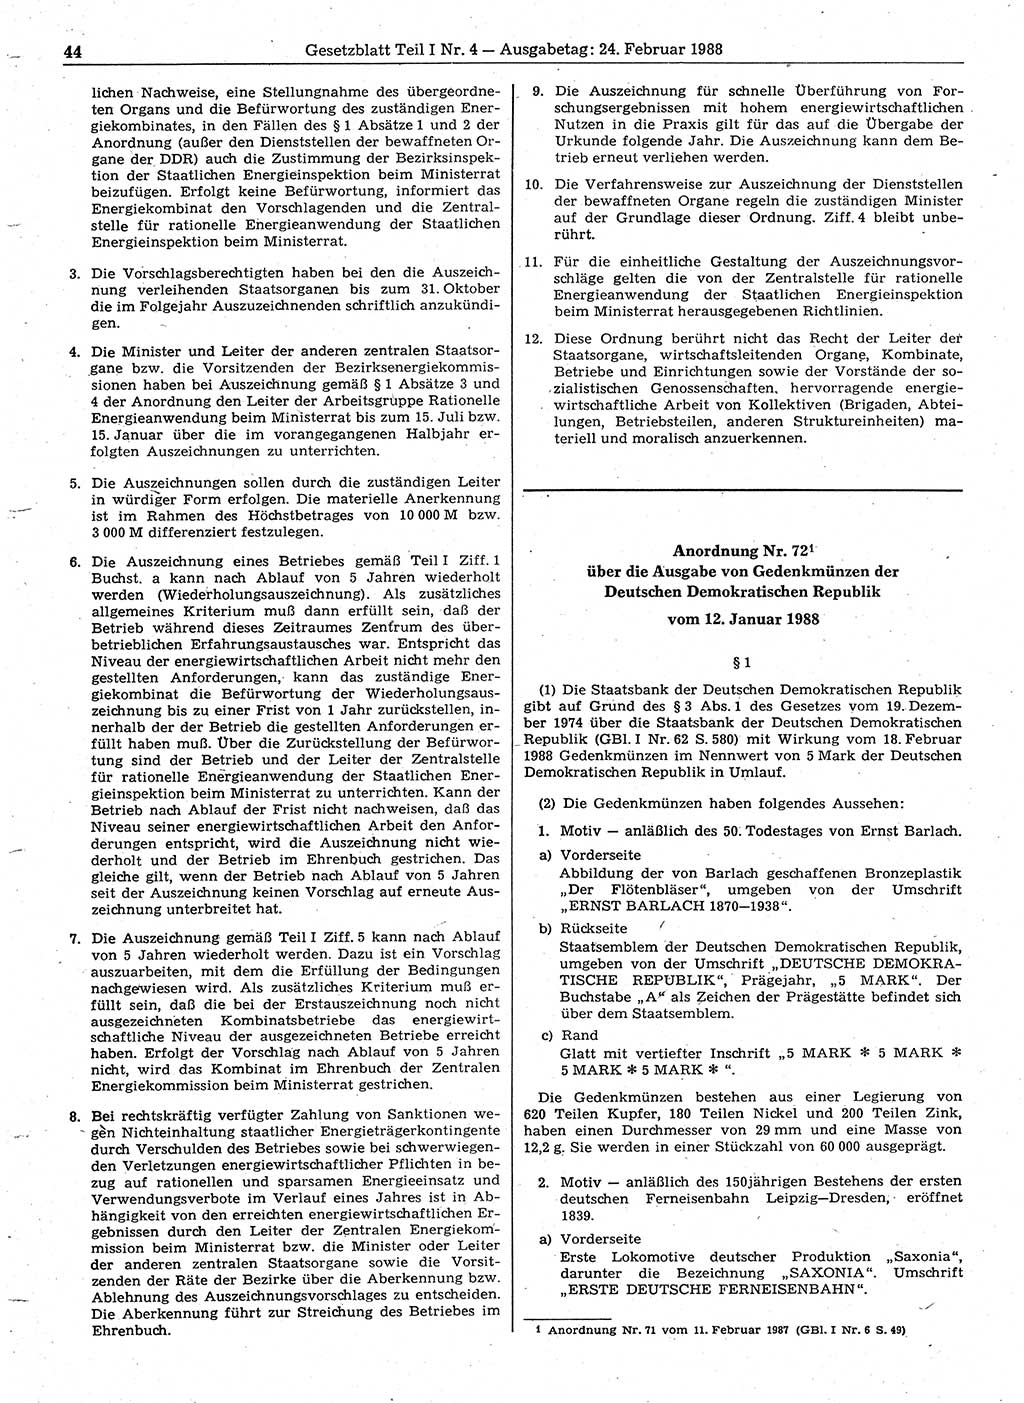 Gesetzblatt (GBl.) der Deutschen Demokratischen Republik (DDR) Teil Ⅰ 1988, Seite 44 (GBl. DDR Ⅰ 1988, S. 44)